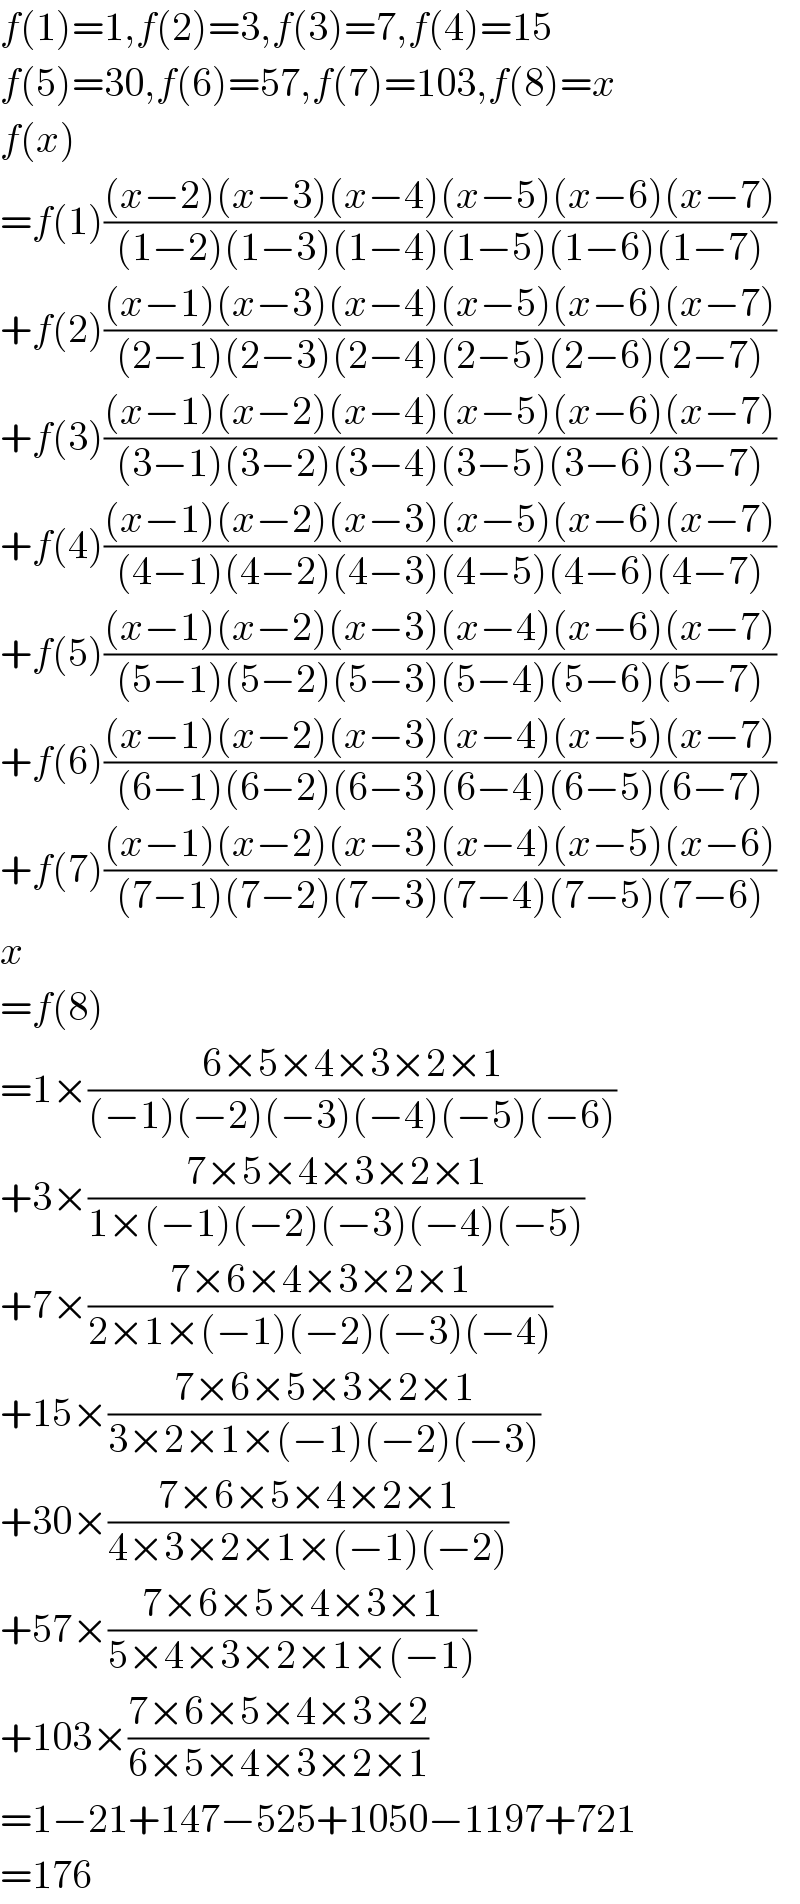 f(1)=1,f(2)=3,f(3)=7,f(4)=15  f(5)=30,f(6)=57,f(7)=103,f(8)=x  f(x)  =f(1)(((x−2)(x−3)(x−4)(x−5)(x−6)(x−7))/((1−2)(1−3)(1−4)(1−5)(1−6)(1−7)))  +f(2)(((x−1)(x−3)(x−4)(x−5)(x−6)(x−7))/((2−1)(2−3)(2−4)(2−5)(2−6)(2−7)))  +f(3)(((x−1)(x−2)(x−4)(x−5)(x−6)(x−7))/((3−1)(3−2)(3−4)(3−5)(3−6)(3−7)))  +f(4)(((x−1)(x−2)(x−3)(x−5)(x−6)(x−7))/((4−1)(4−2)(4−3)(4−5)(4−6)(4−7)))  +f(5)(((x−1)(x−2)(x−3)(x−4)(x−6)(x−7))/((5−1)(5−2)(5−3)(5−4)(5−6)(5−7)))  +f(6)(((x−1)(x−2)(x−3)(x−4)(x−5)(x−7))/((6−1)(6−2)(6−3)(6−4)(6−5)(6−7)))  +f(7)(((x−1)(x−2)(x−3)(x−4)(x−5)(x−6))/((7−1)(7−2)(7−3)(7−4)(7−5)(7−6)))  x  =f(8)  =1×((6×5×4×3×2×1)/((−1)(−2)(−3)(−4)(−5)(−6)))  +3×((7×5×4×3×2×1)/(1×(−1)(−2)(−3)(−4)(−5)))  +7×((7×6×4×3×2×1)/(2×1×(−1)(−2)(−3)(−4)))  +15×((7×6×5×3×2×1)/(3×2×1×(−1)(−2)(−3)))  +30×((7×6×5×4×2×1)/(4×3×2×1×(−1)(−2)))  +57×((7×6×5×4×3×1)/(5×4×3×2×1×(−1)))  +103×((7×6×5×4×3×2)/(6×5×4×3×2×1))  =1−21+147−525+1050−1197+721  =176  